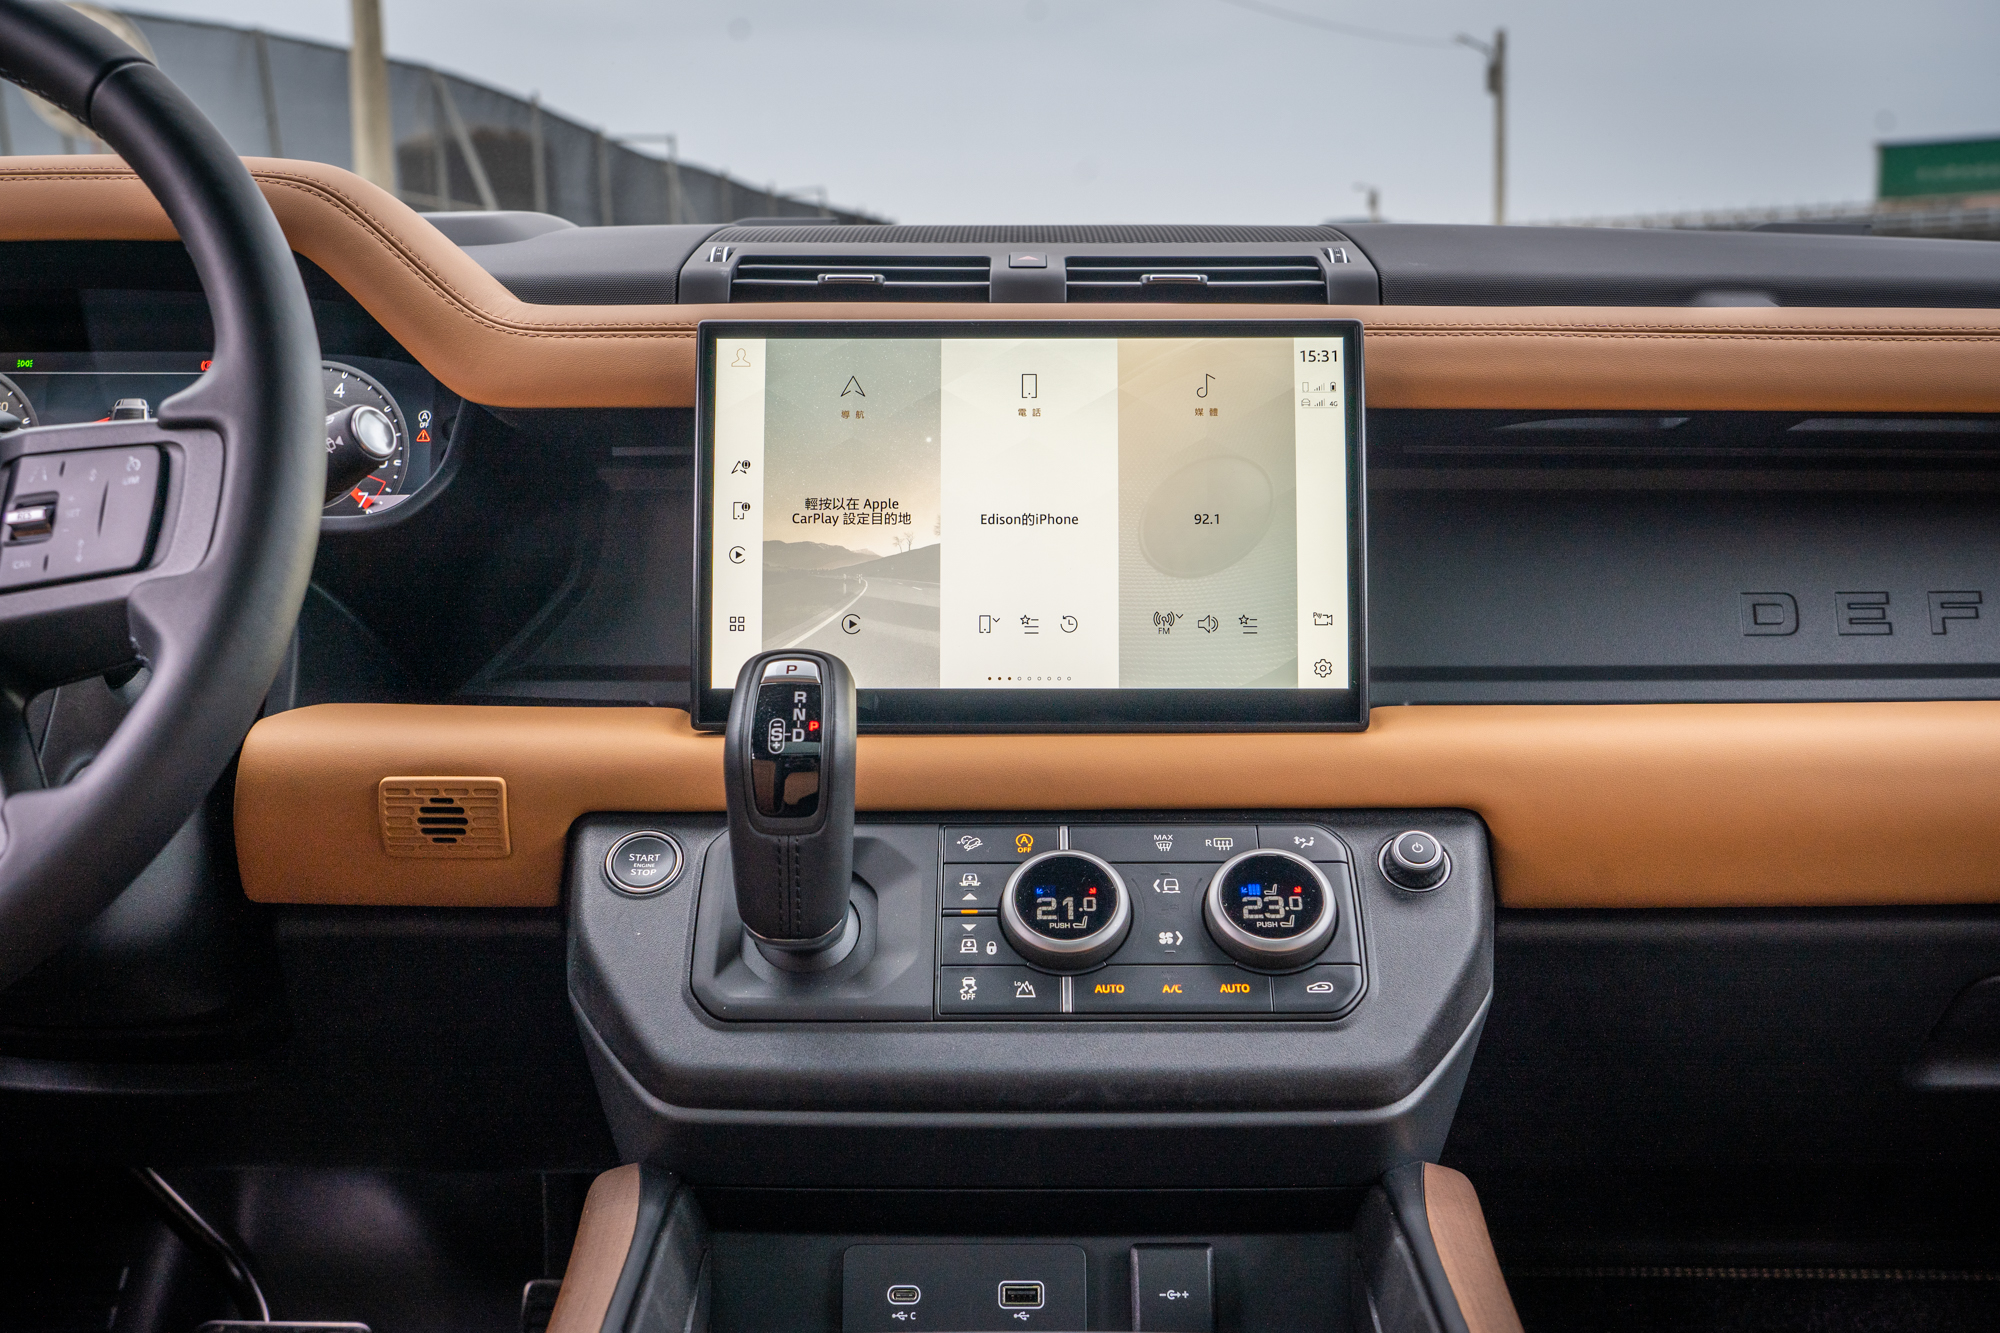 11.4 吋 Pivi Pro 多媒體觸控式顯示屏幕，具備 Apple CarPlay 與 Android Auto 智慧型手機連網功能。